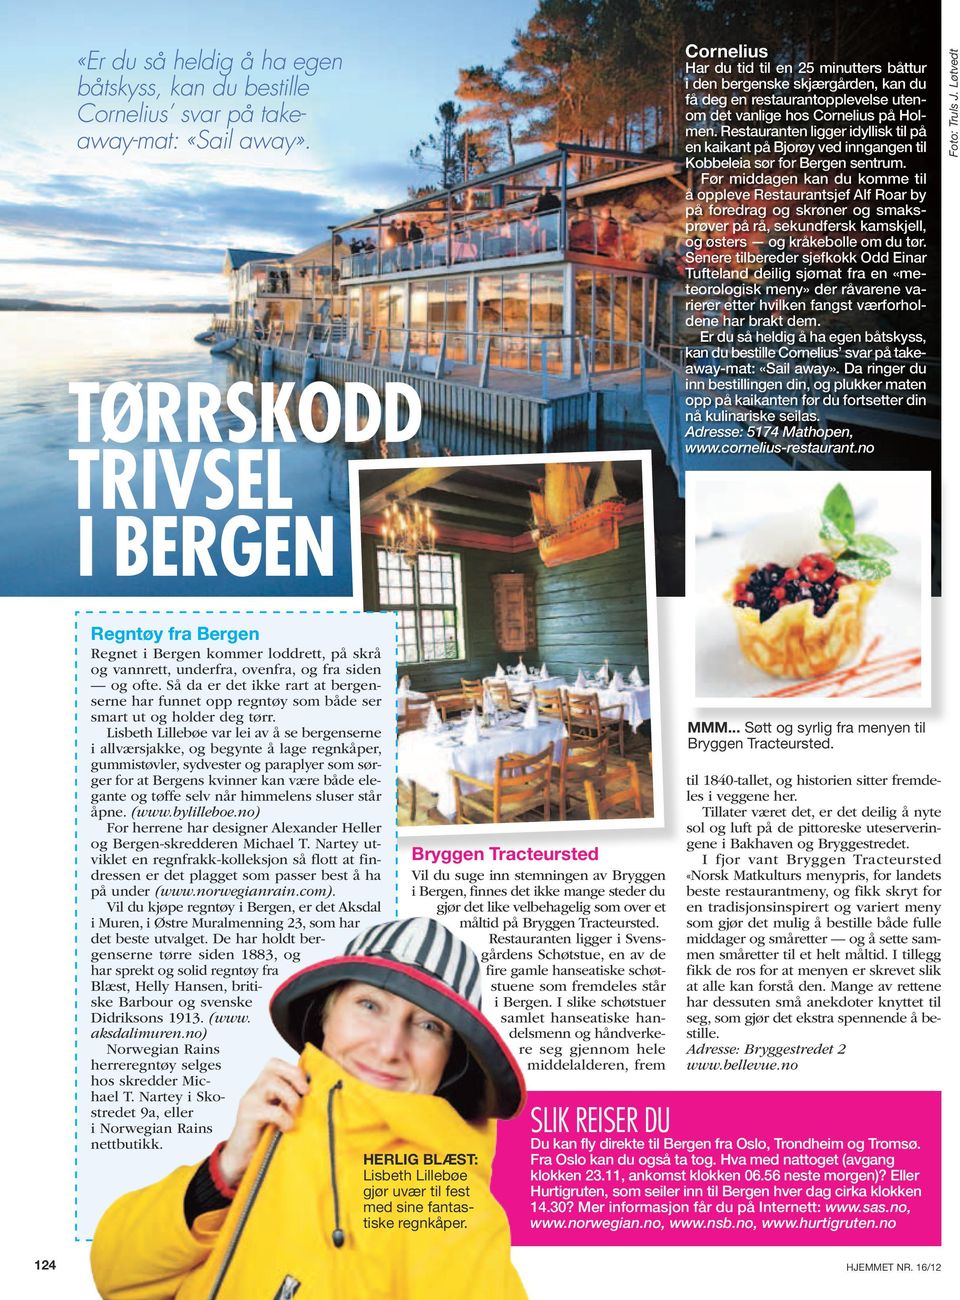 Restauranten ligger idyllisk til på en kai kant på Bjor øy ved inn gan gen til Kobbeleia sør for Bergen sentrum.